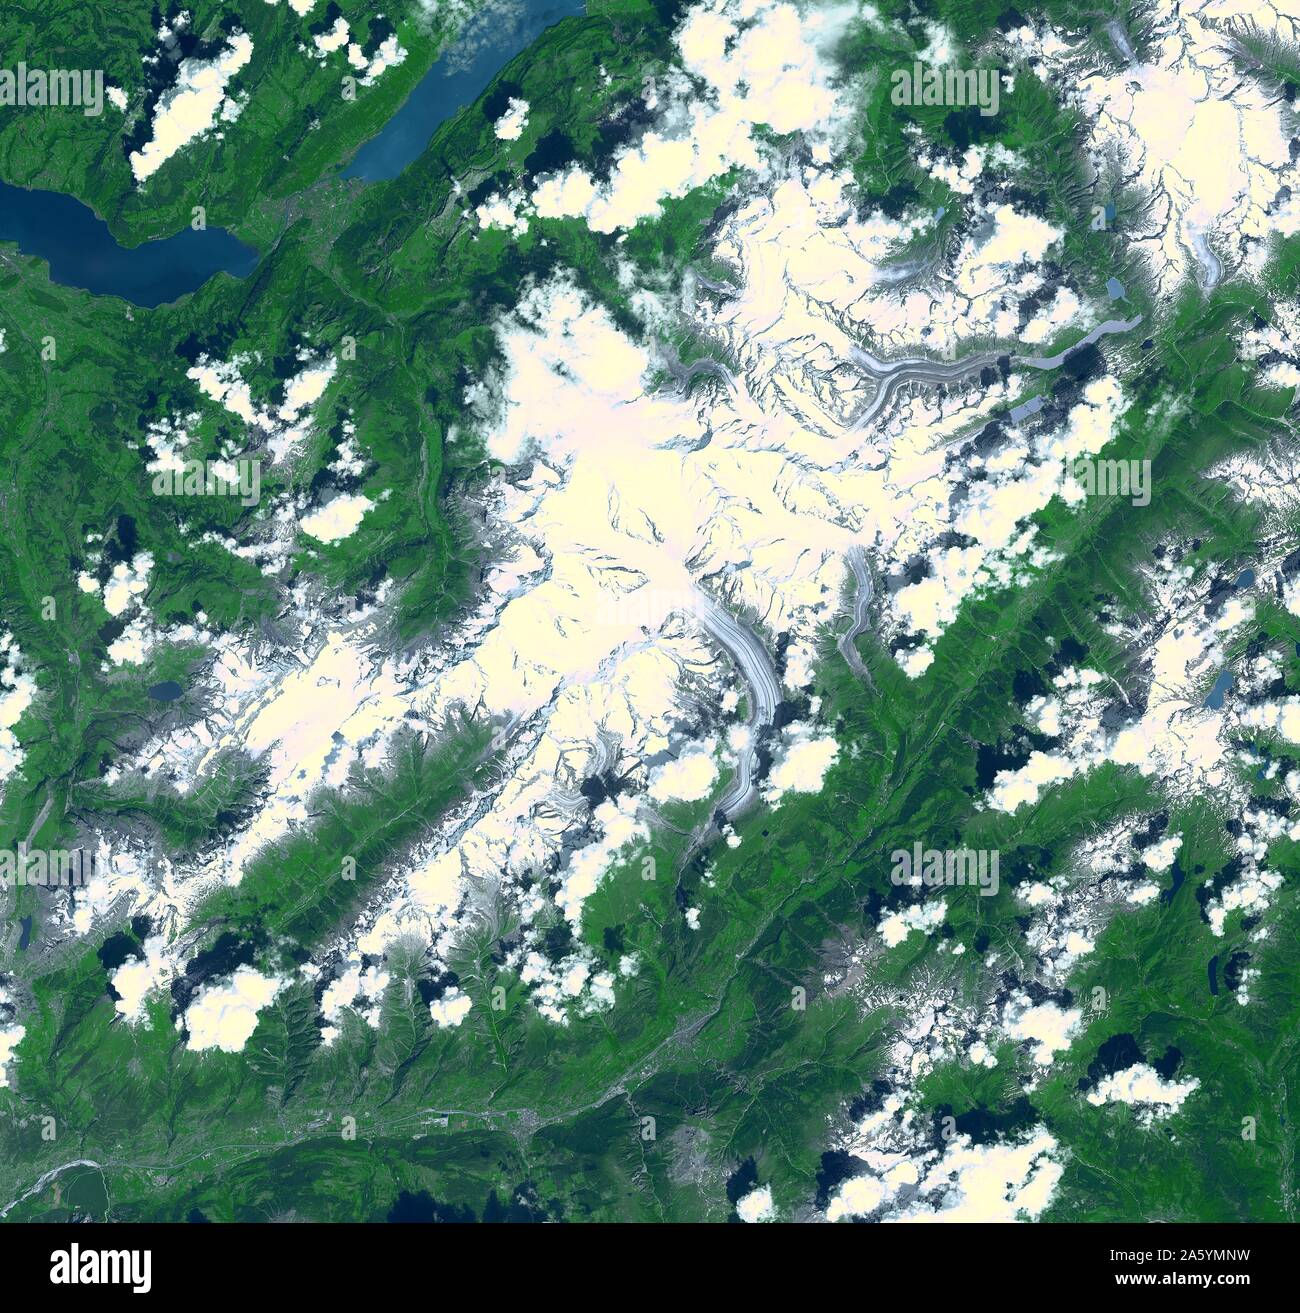 Ghiacciaio di Aletsch, il più grande ghiacciaio d'Europa. La Svizzera meridionale. Il 23 luglio 2001. Immagine satellitare. Foto Stock